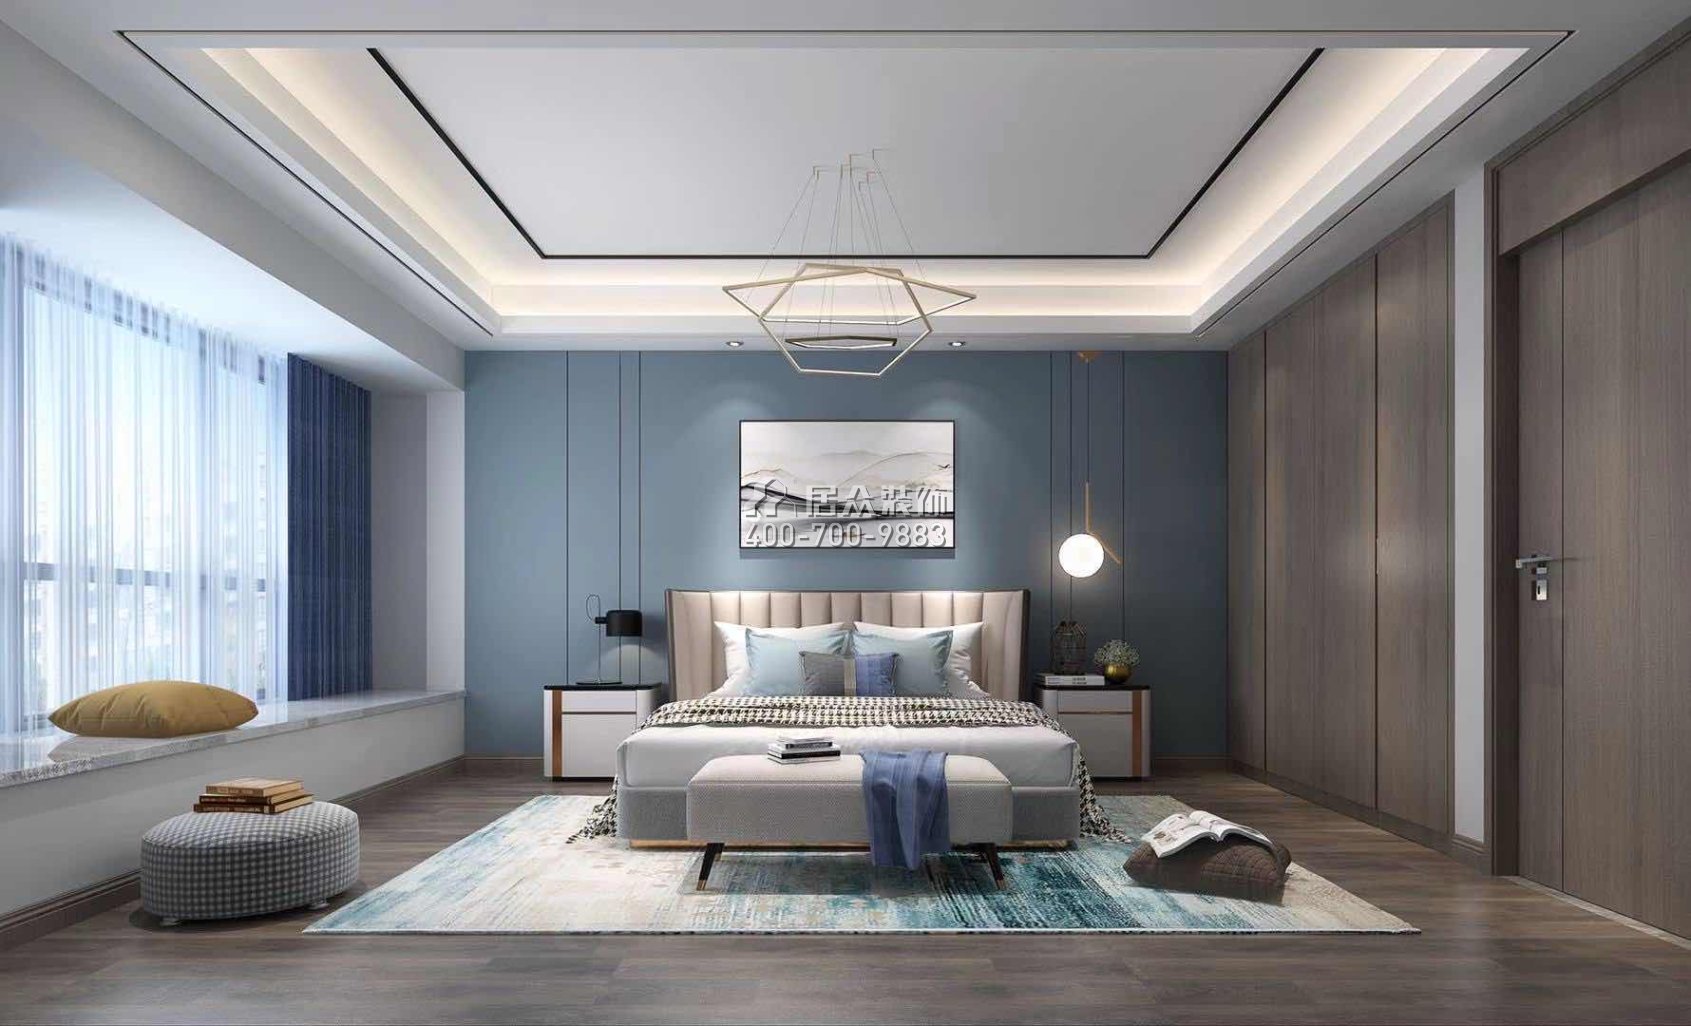 經世龍城140平方米現代簡約風格平層戶型臥室裝修效果圖